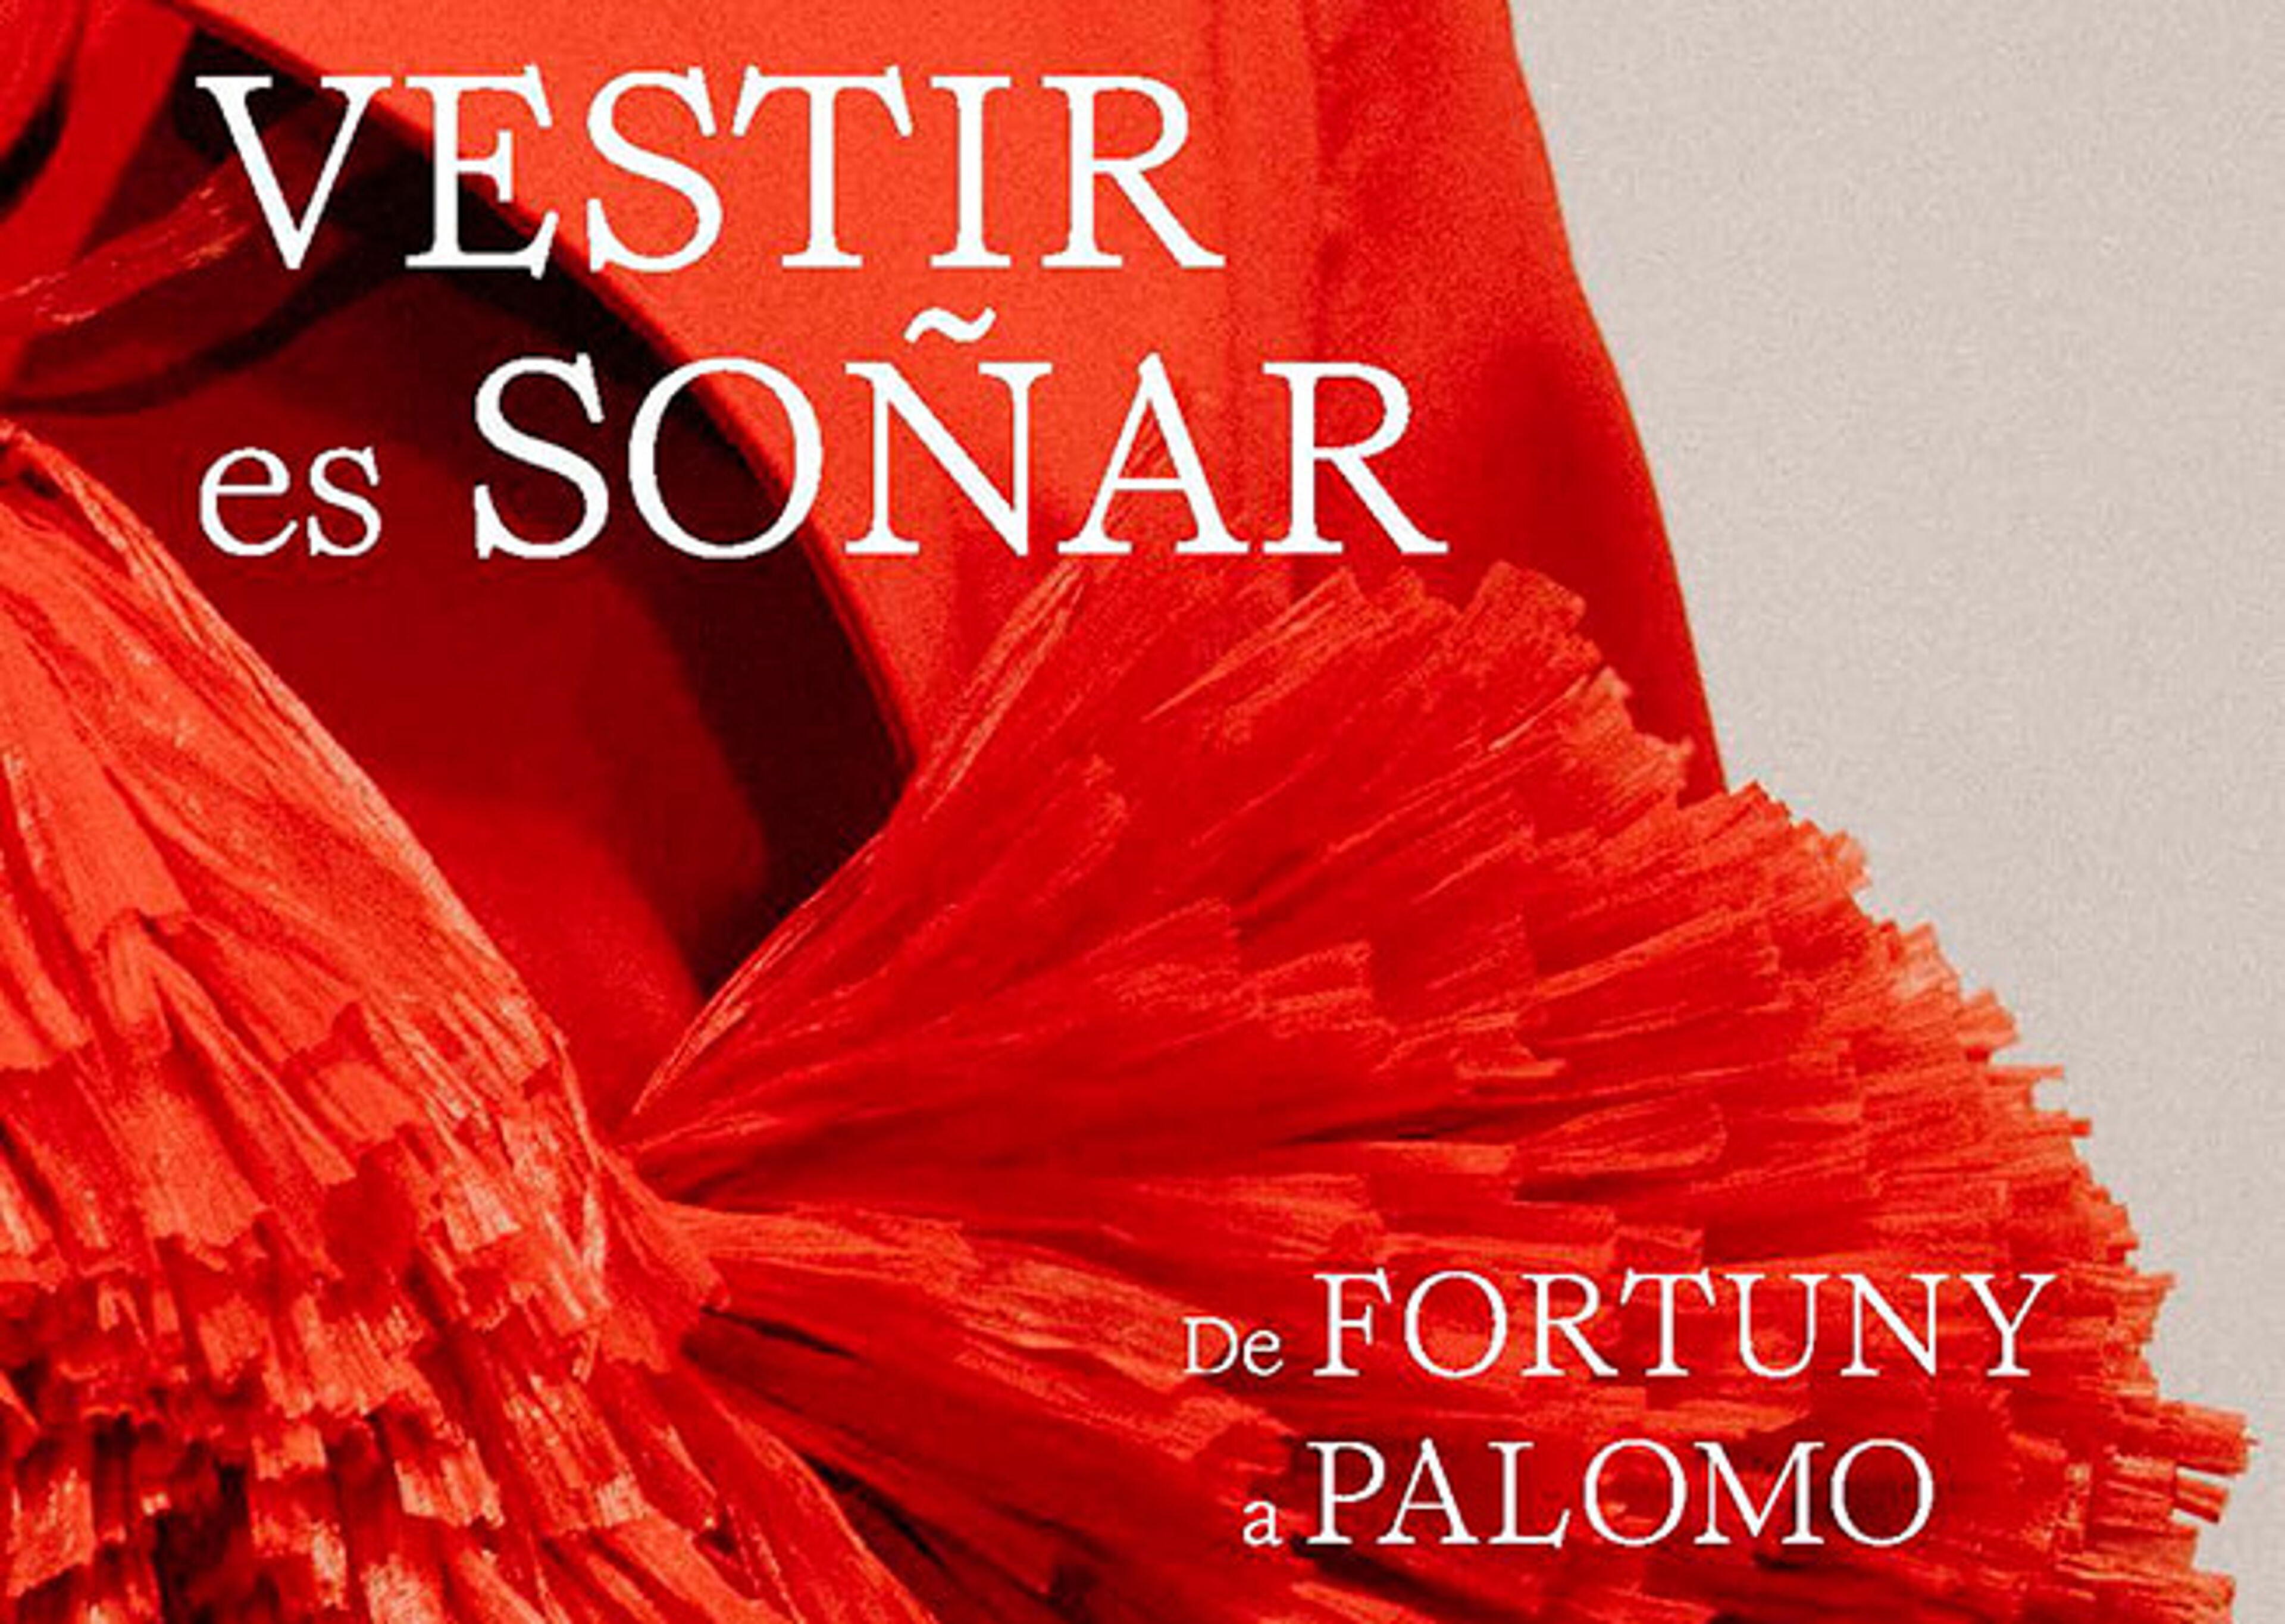 Un pòster viu per a una exposició de moda, "VESTIR es SOÑAR", que mostra un detall de teixit vermell ric amb text que atribueix la feina de "FORTUNY a PALOMO".